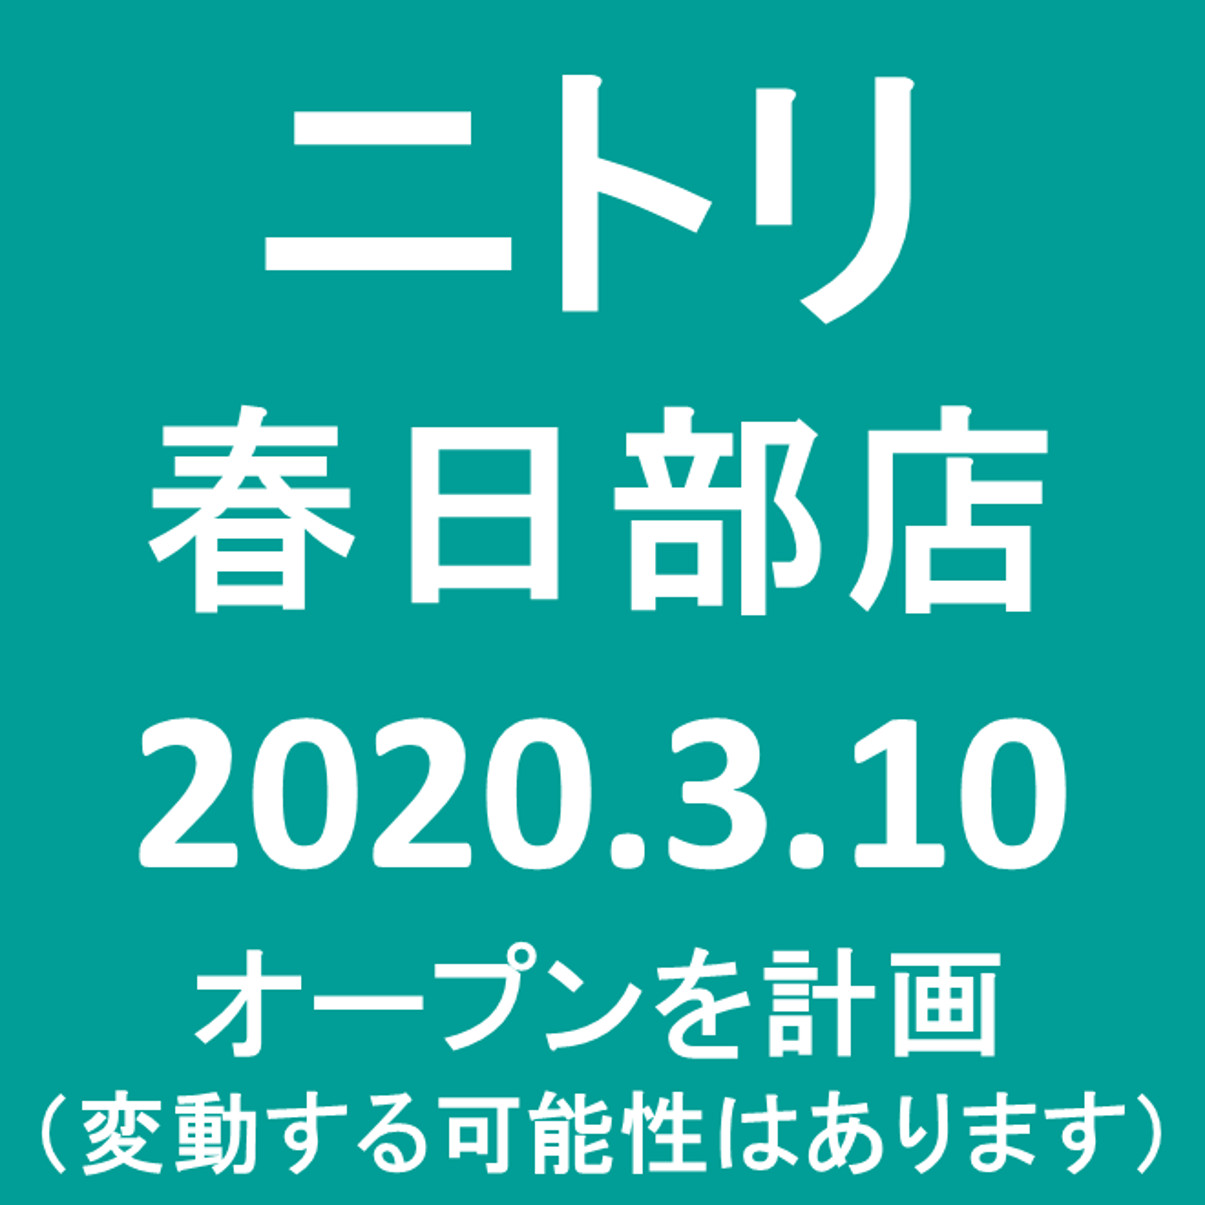 ニトリ春日部店20200310オープン計画アイキャッチ1205